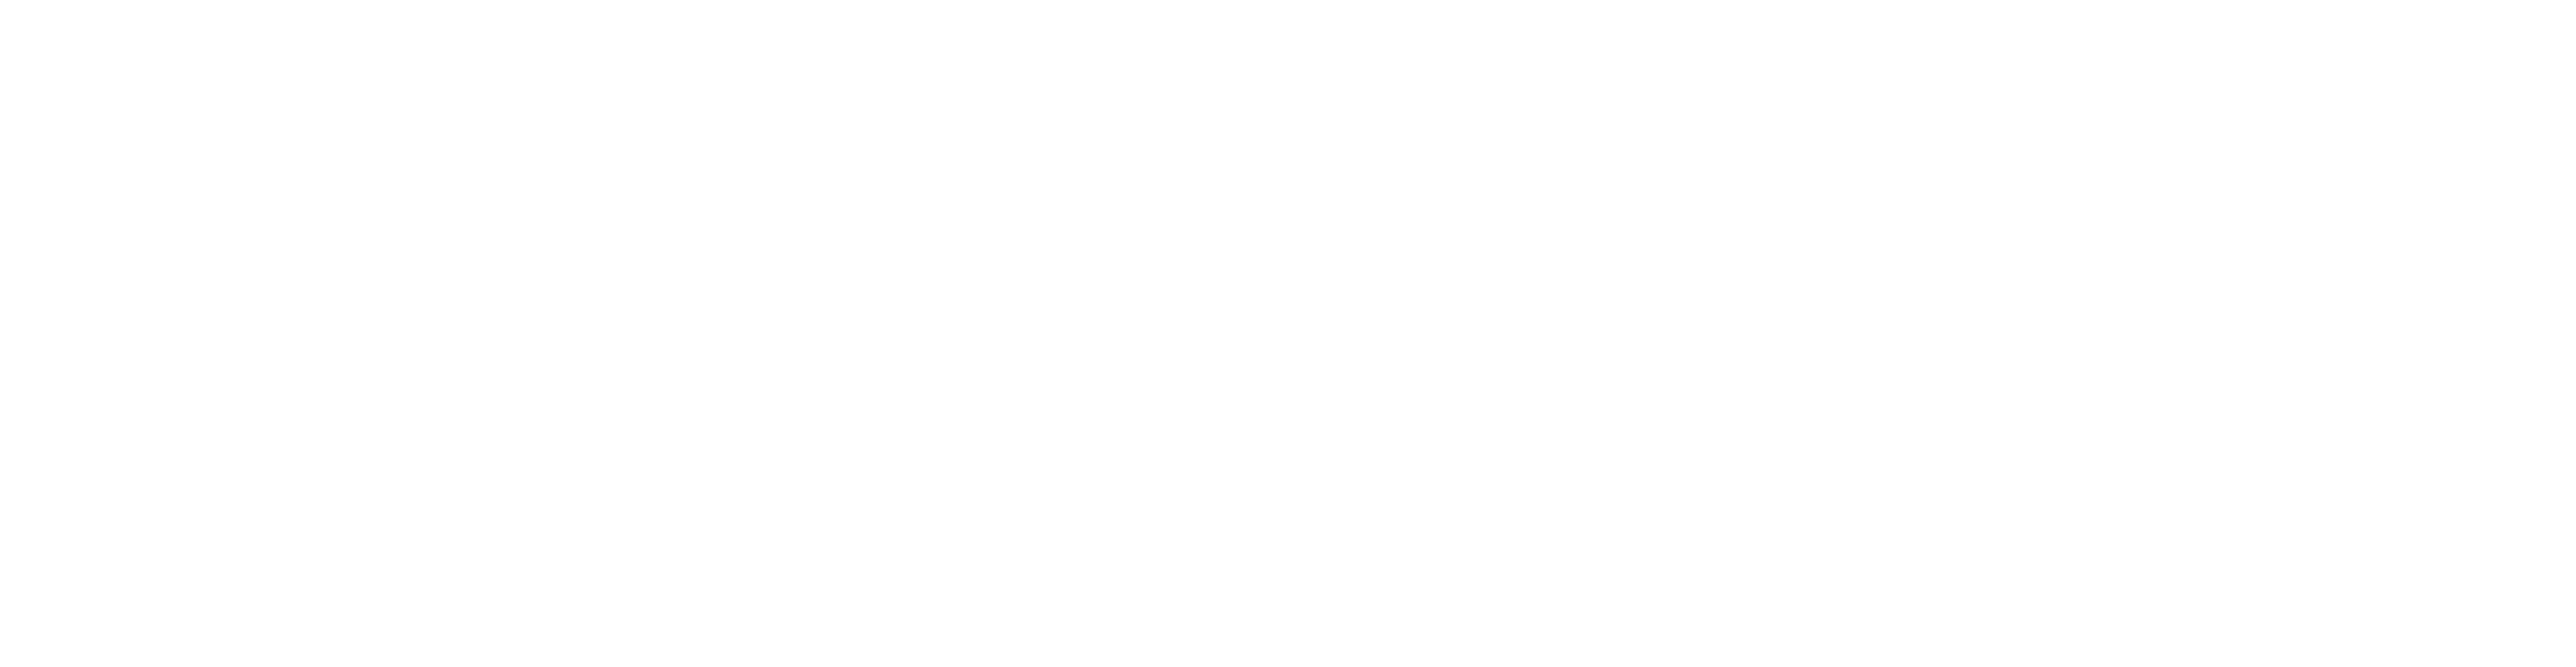 Cognitive - Business Insight Thru Data